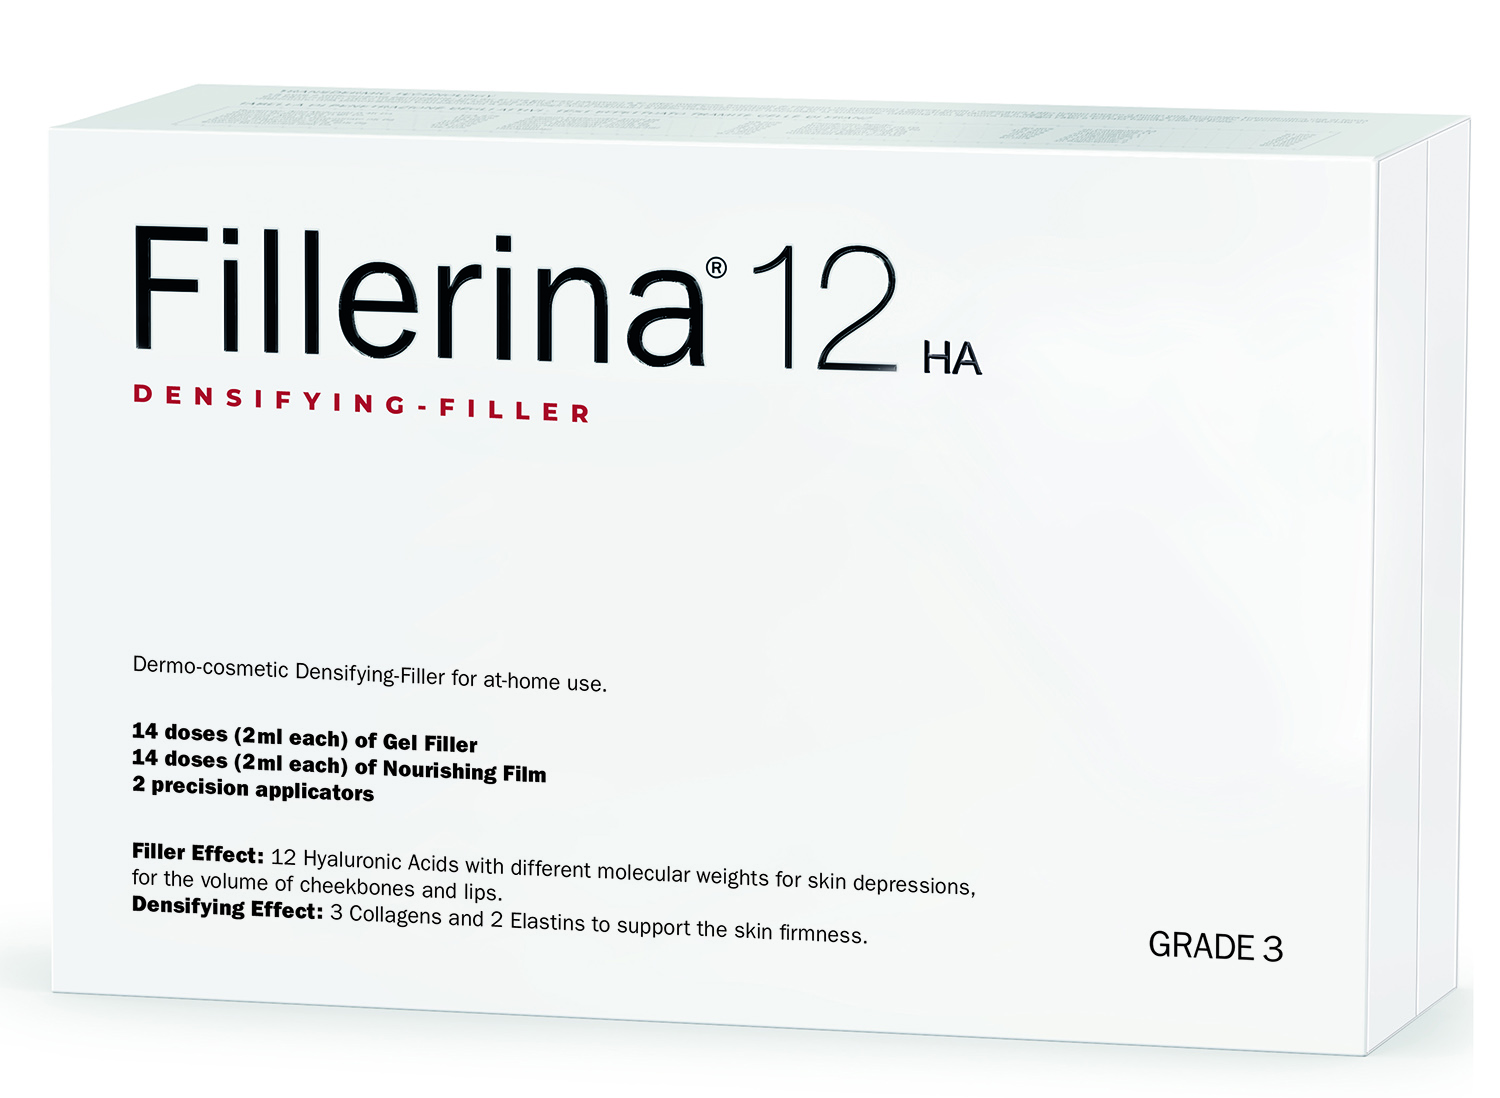 fillerina 12 ha densifying filler дермо косметический филлер с укрепляющим эффектом уровень 4 30 мл 30 мл Fillerina Дермо-косметический набор с укрепляющим эффектом Intensive уровень 3, 2 флакона х 30 мл (Fillerina, 12 HA Densifying-Filler)